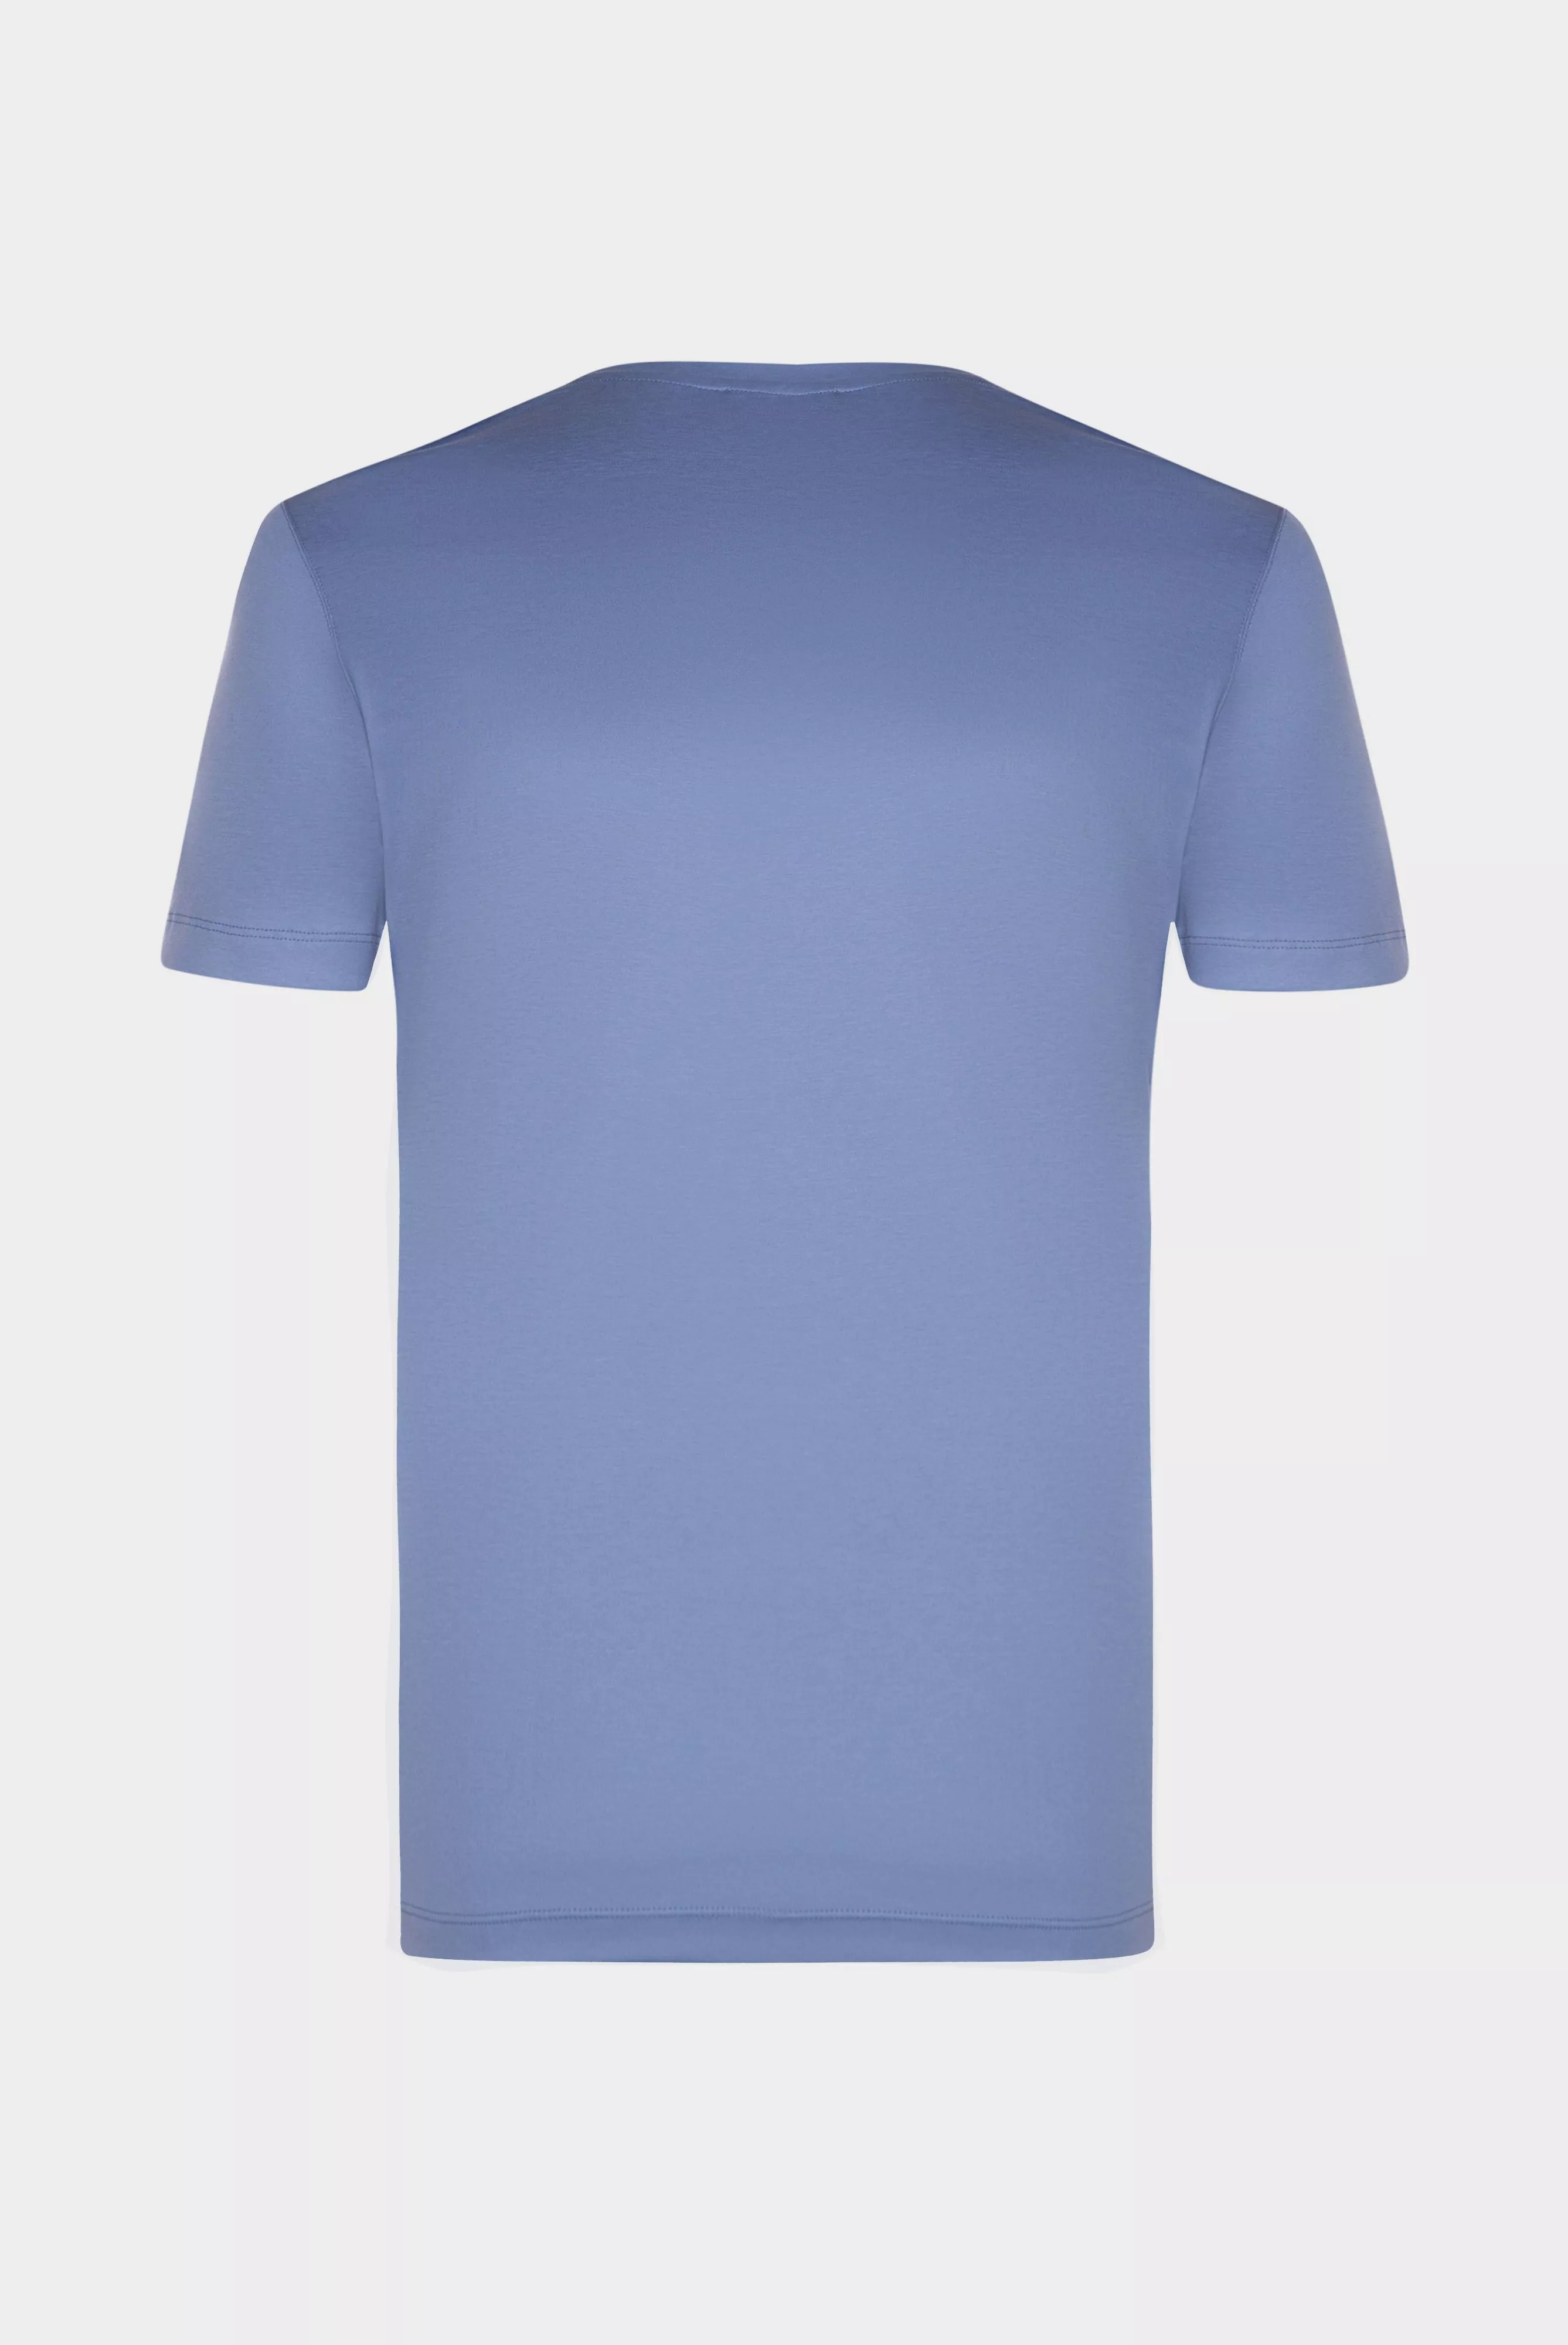 футболка PARO серо-голубой PARO_180031_760 ,photo 3